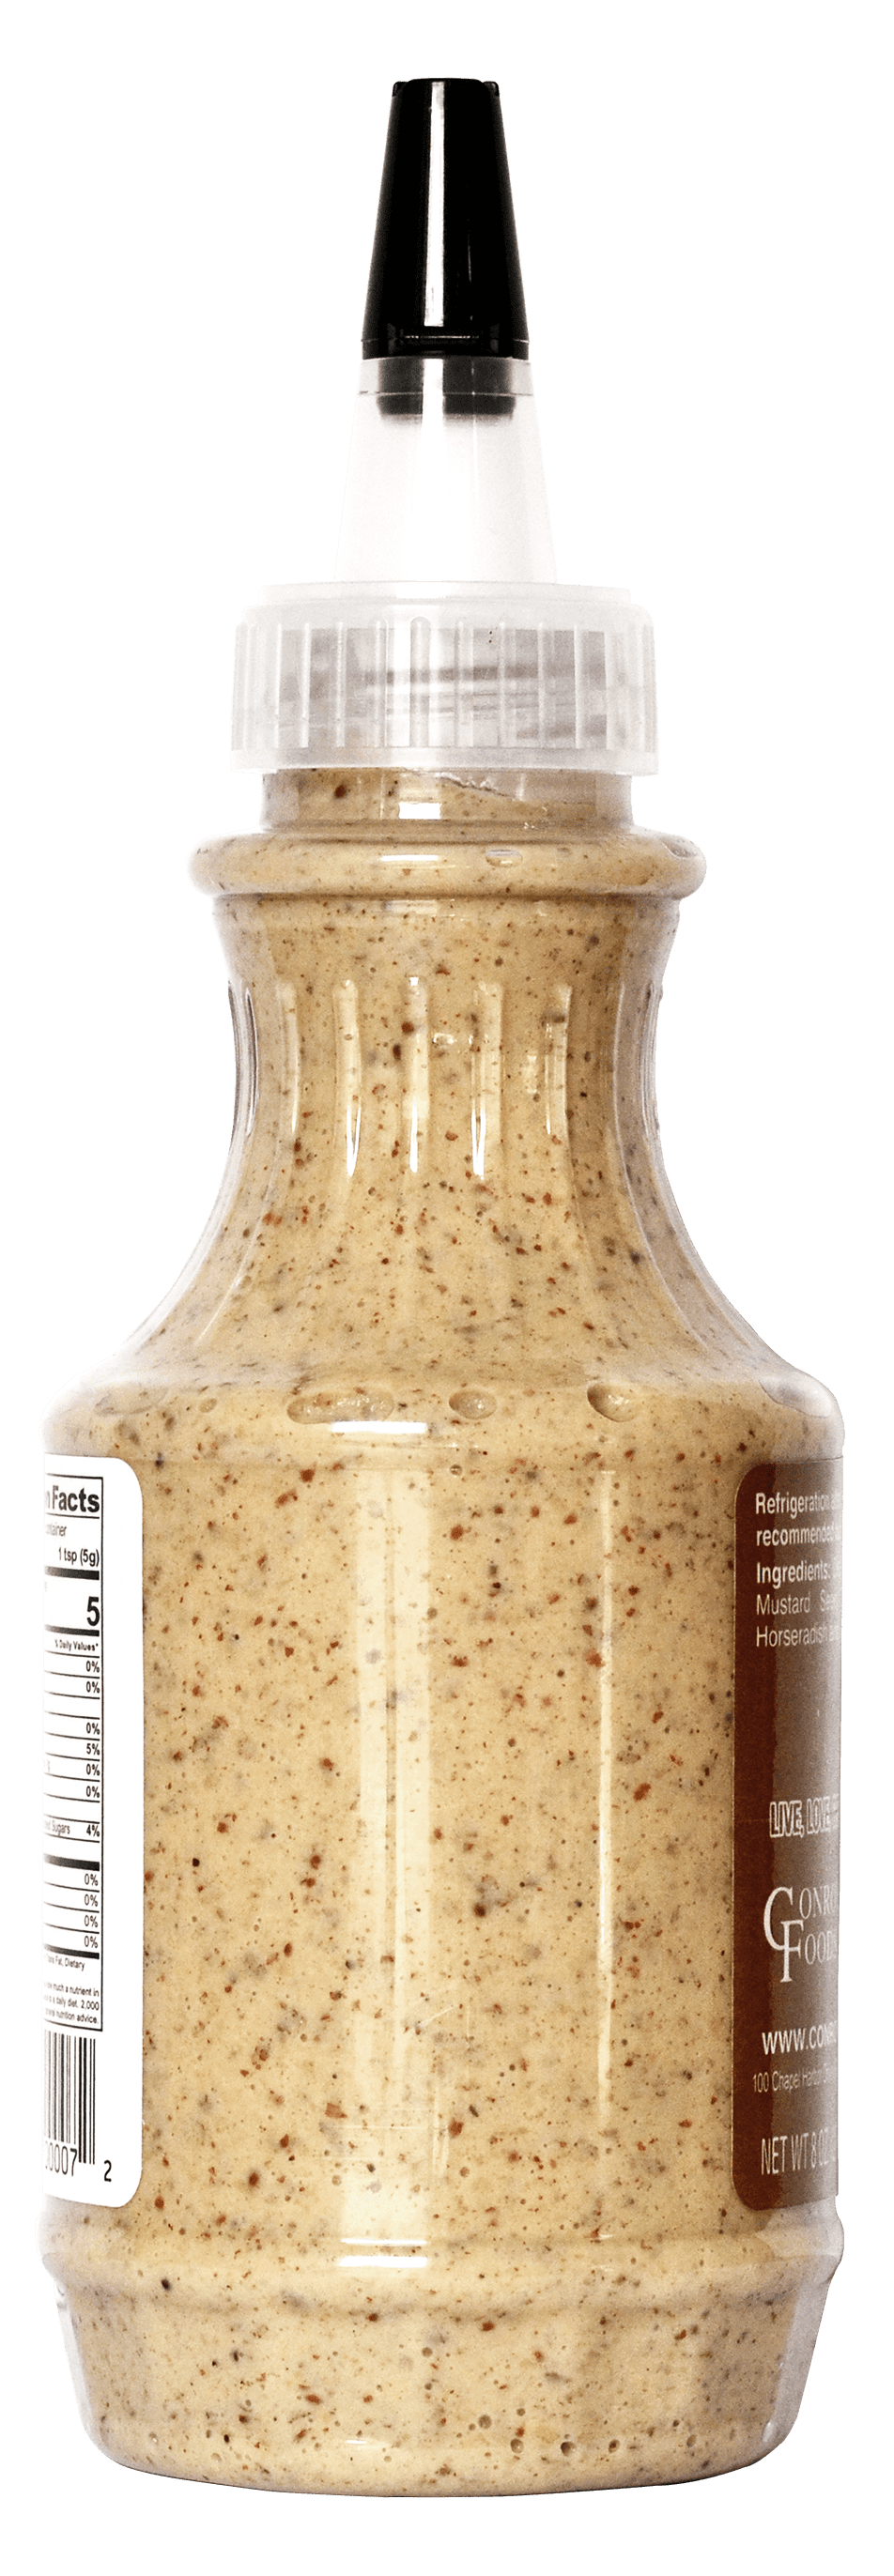 Beano's Pineapple Honey Mustard, 12/8 Ounce Bottles